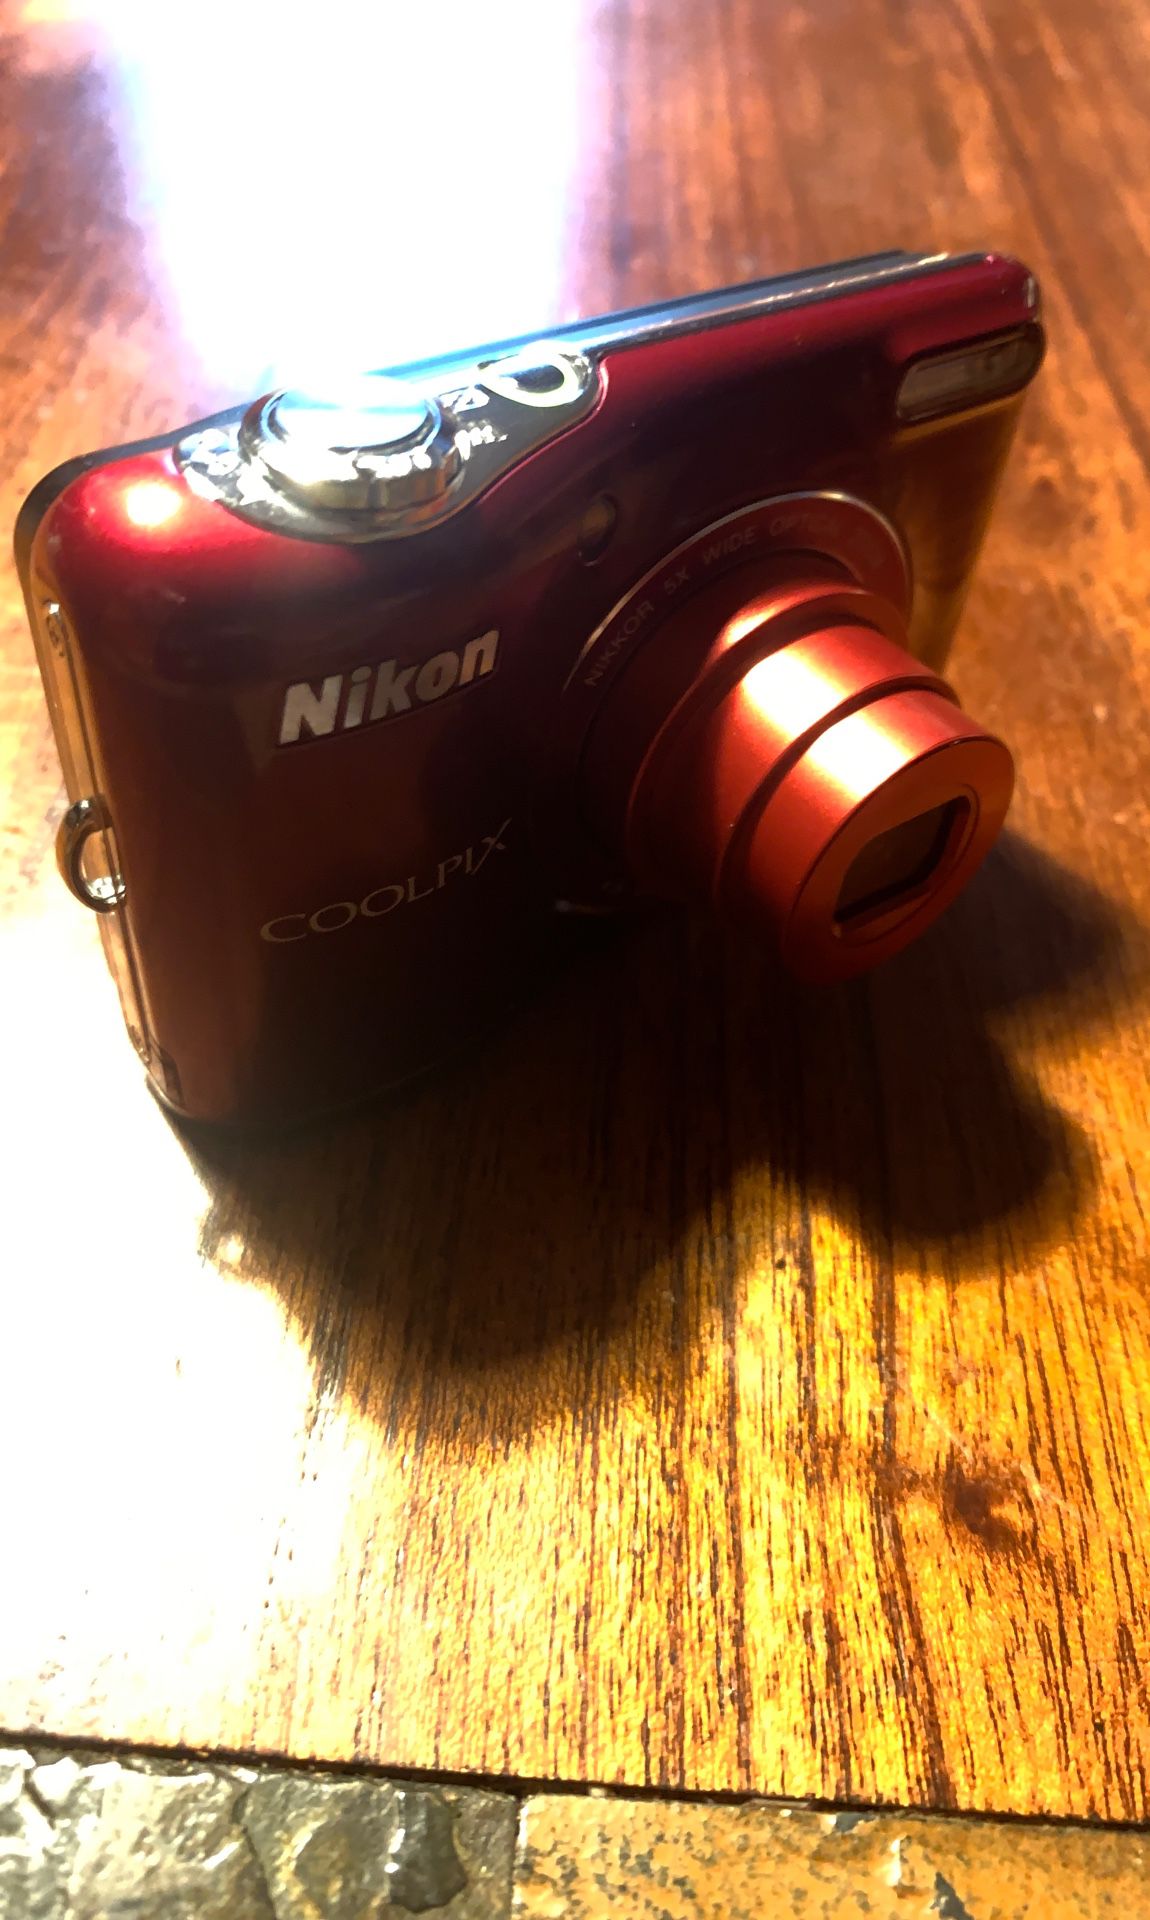 Nikon Coolpix L30 digital camera